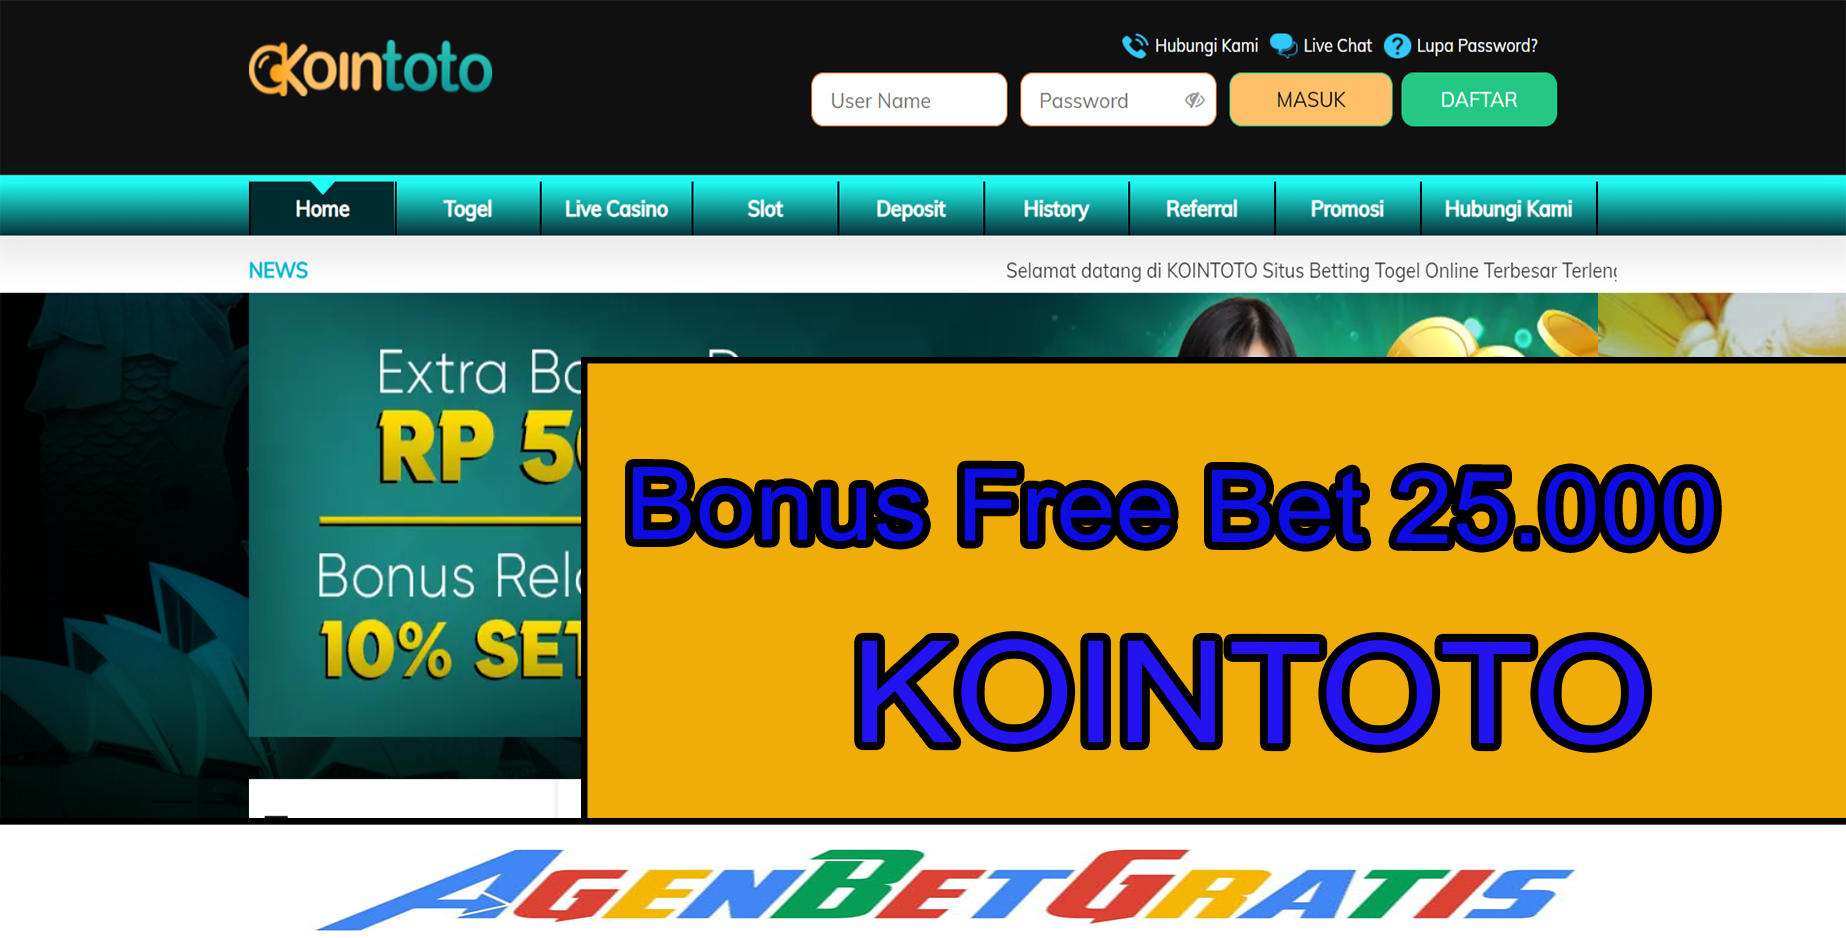 KOINTOTO - Bonus FreeBet 25.000